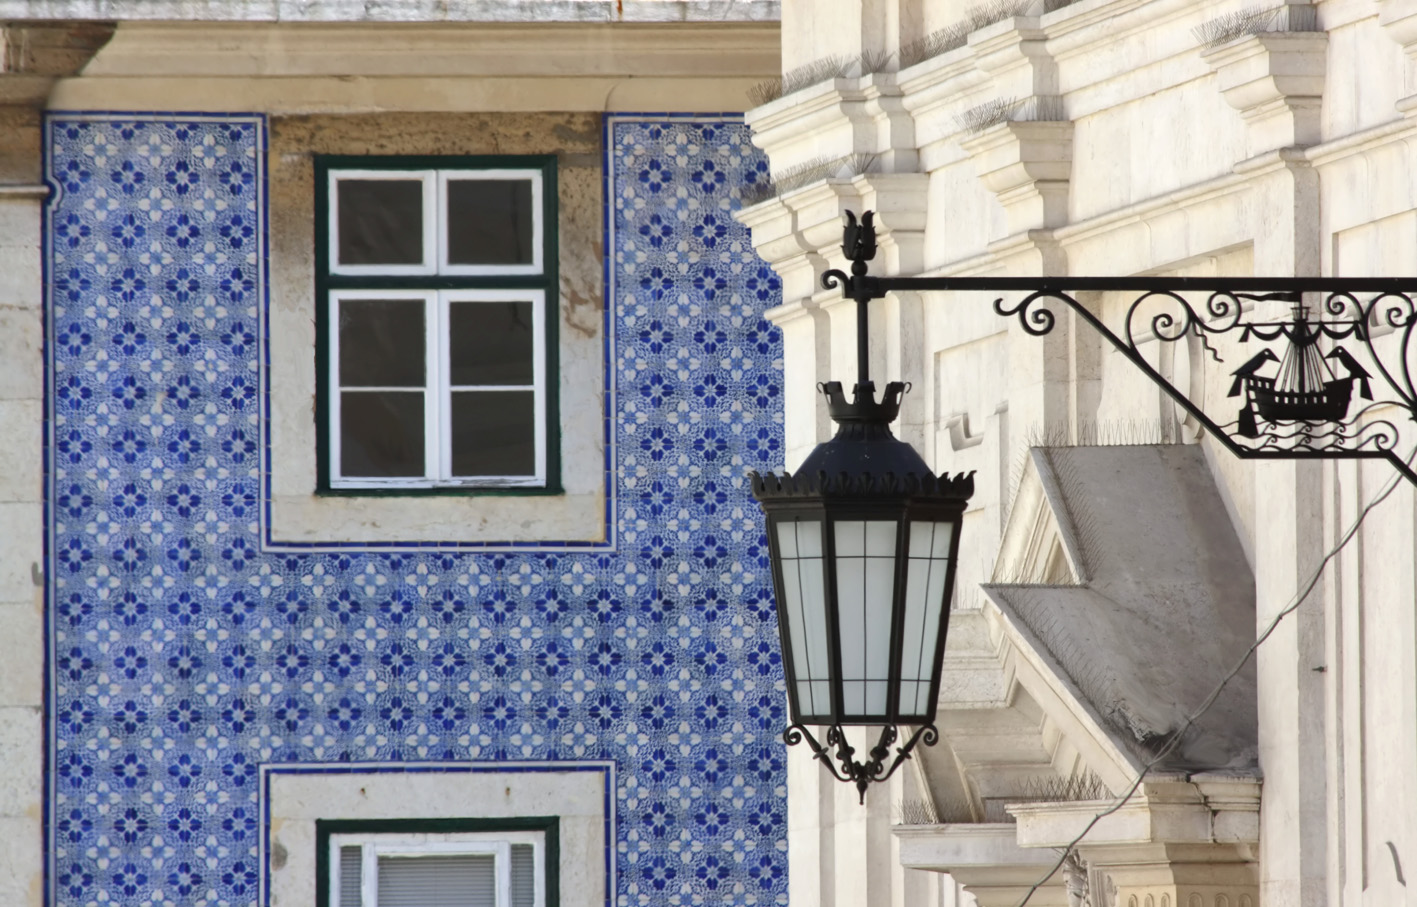 Lisbona, un viaggio attraverso 5 tour virtuali + 1 mostra (che arriva dall’Italia)